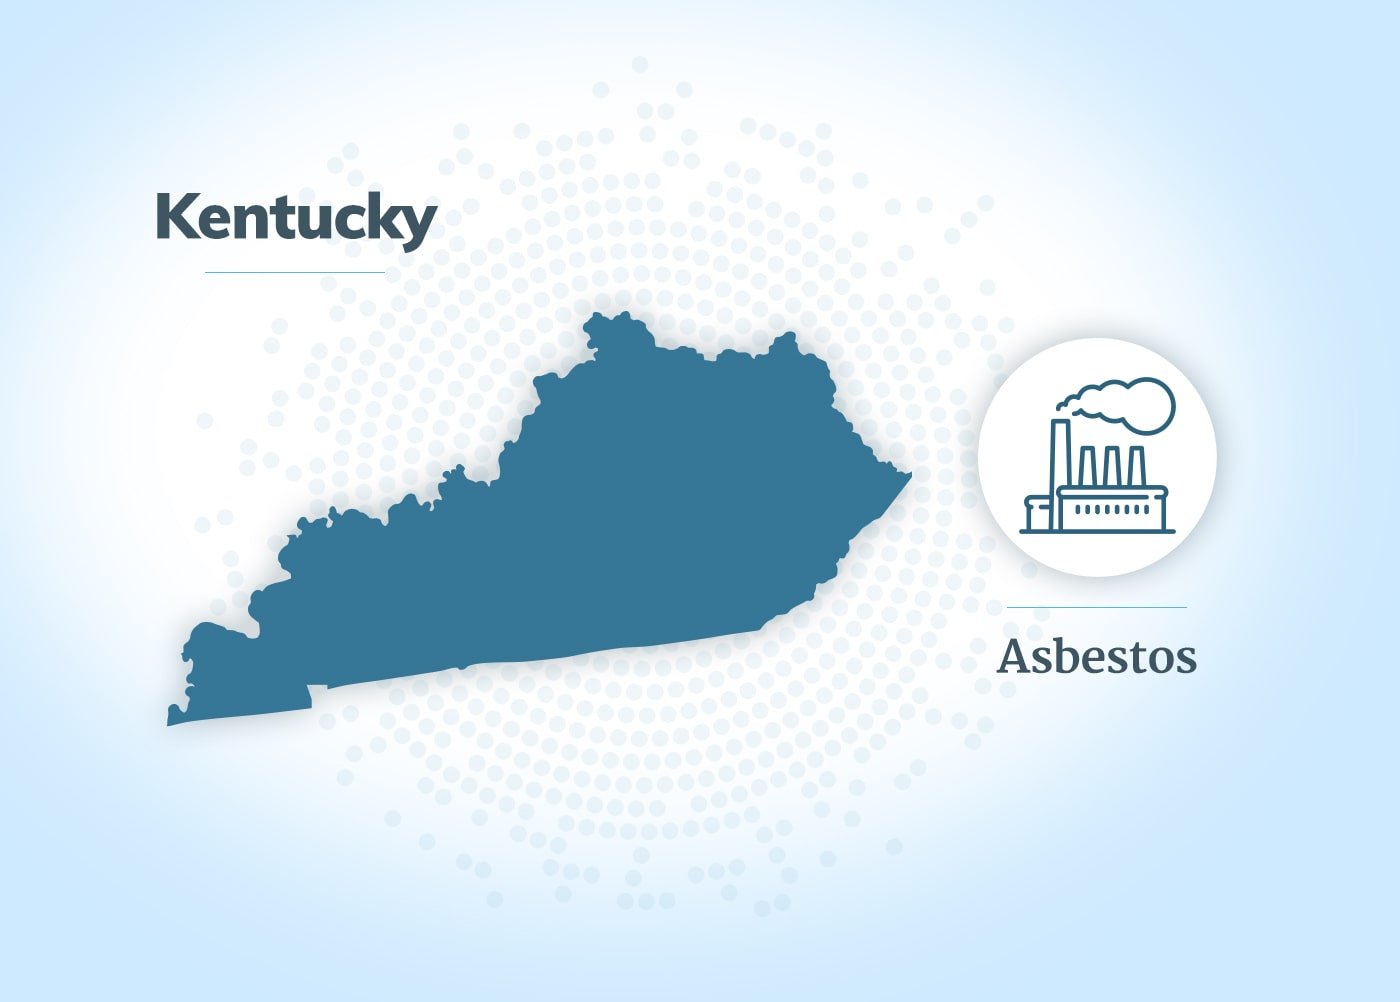 Asbestos exposure in Kentucky